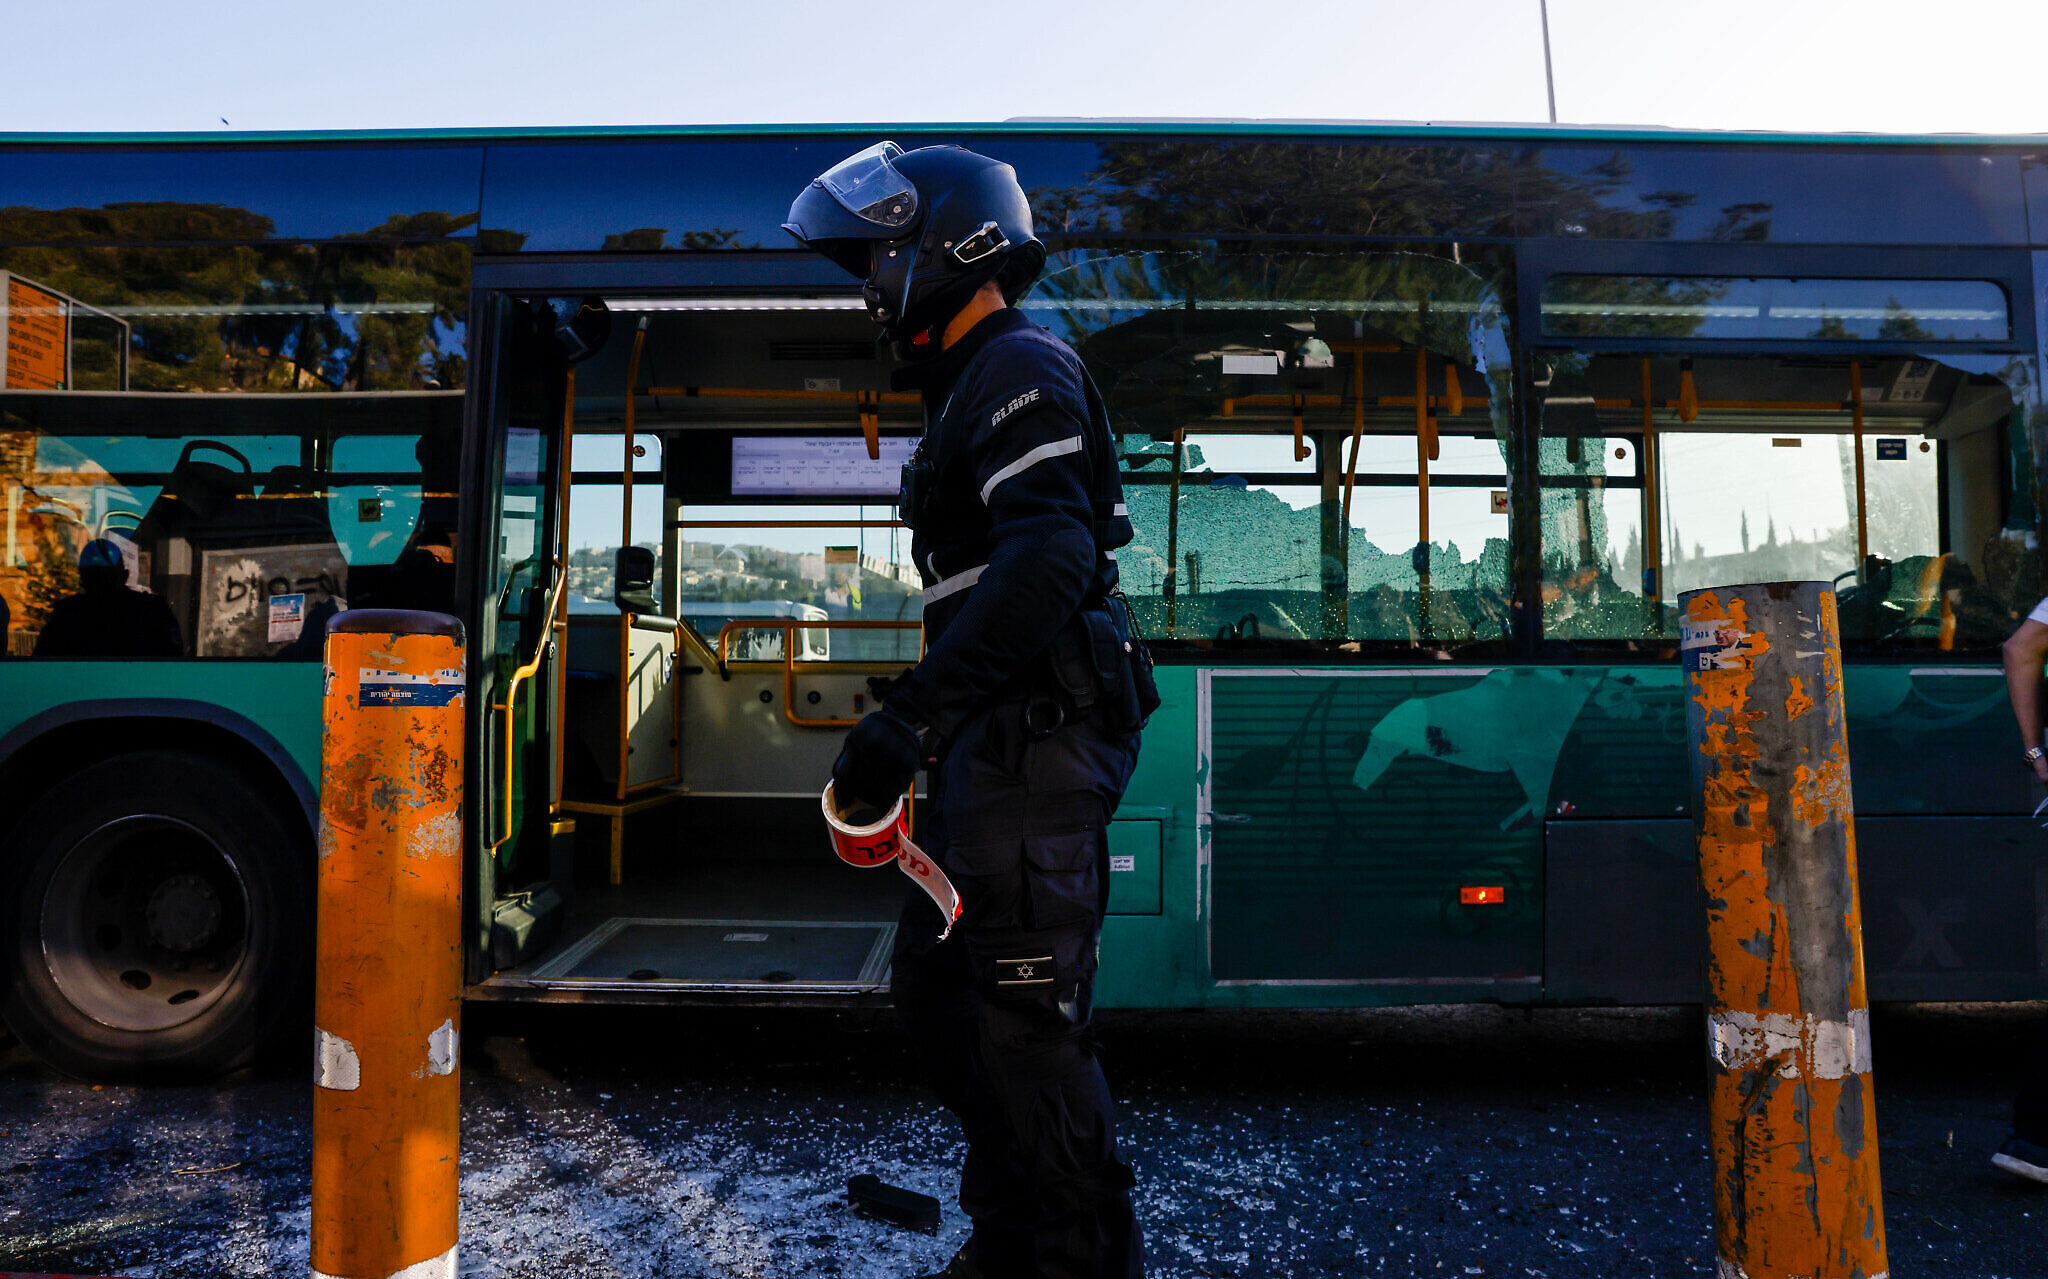 Έκρηξη βόμβας σε στάση λεωφορείων στην Ιερουσαλήμ – 14 τραυματίες, 2 σε κρίσιμη κατάσταση